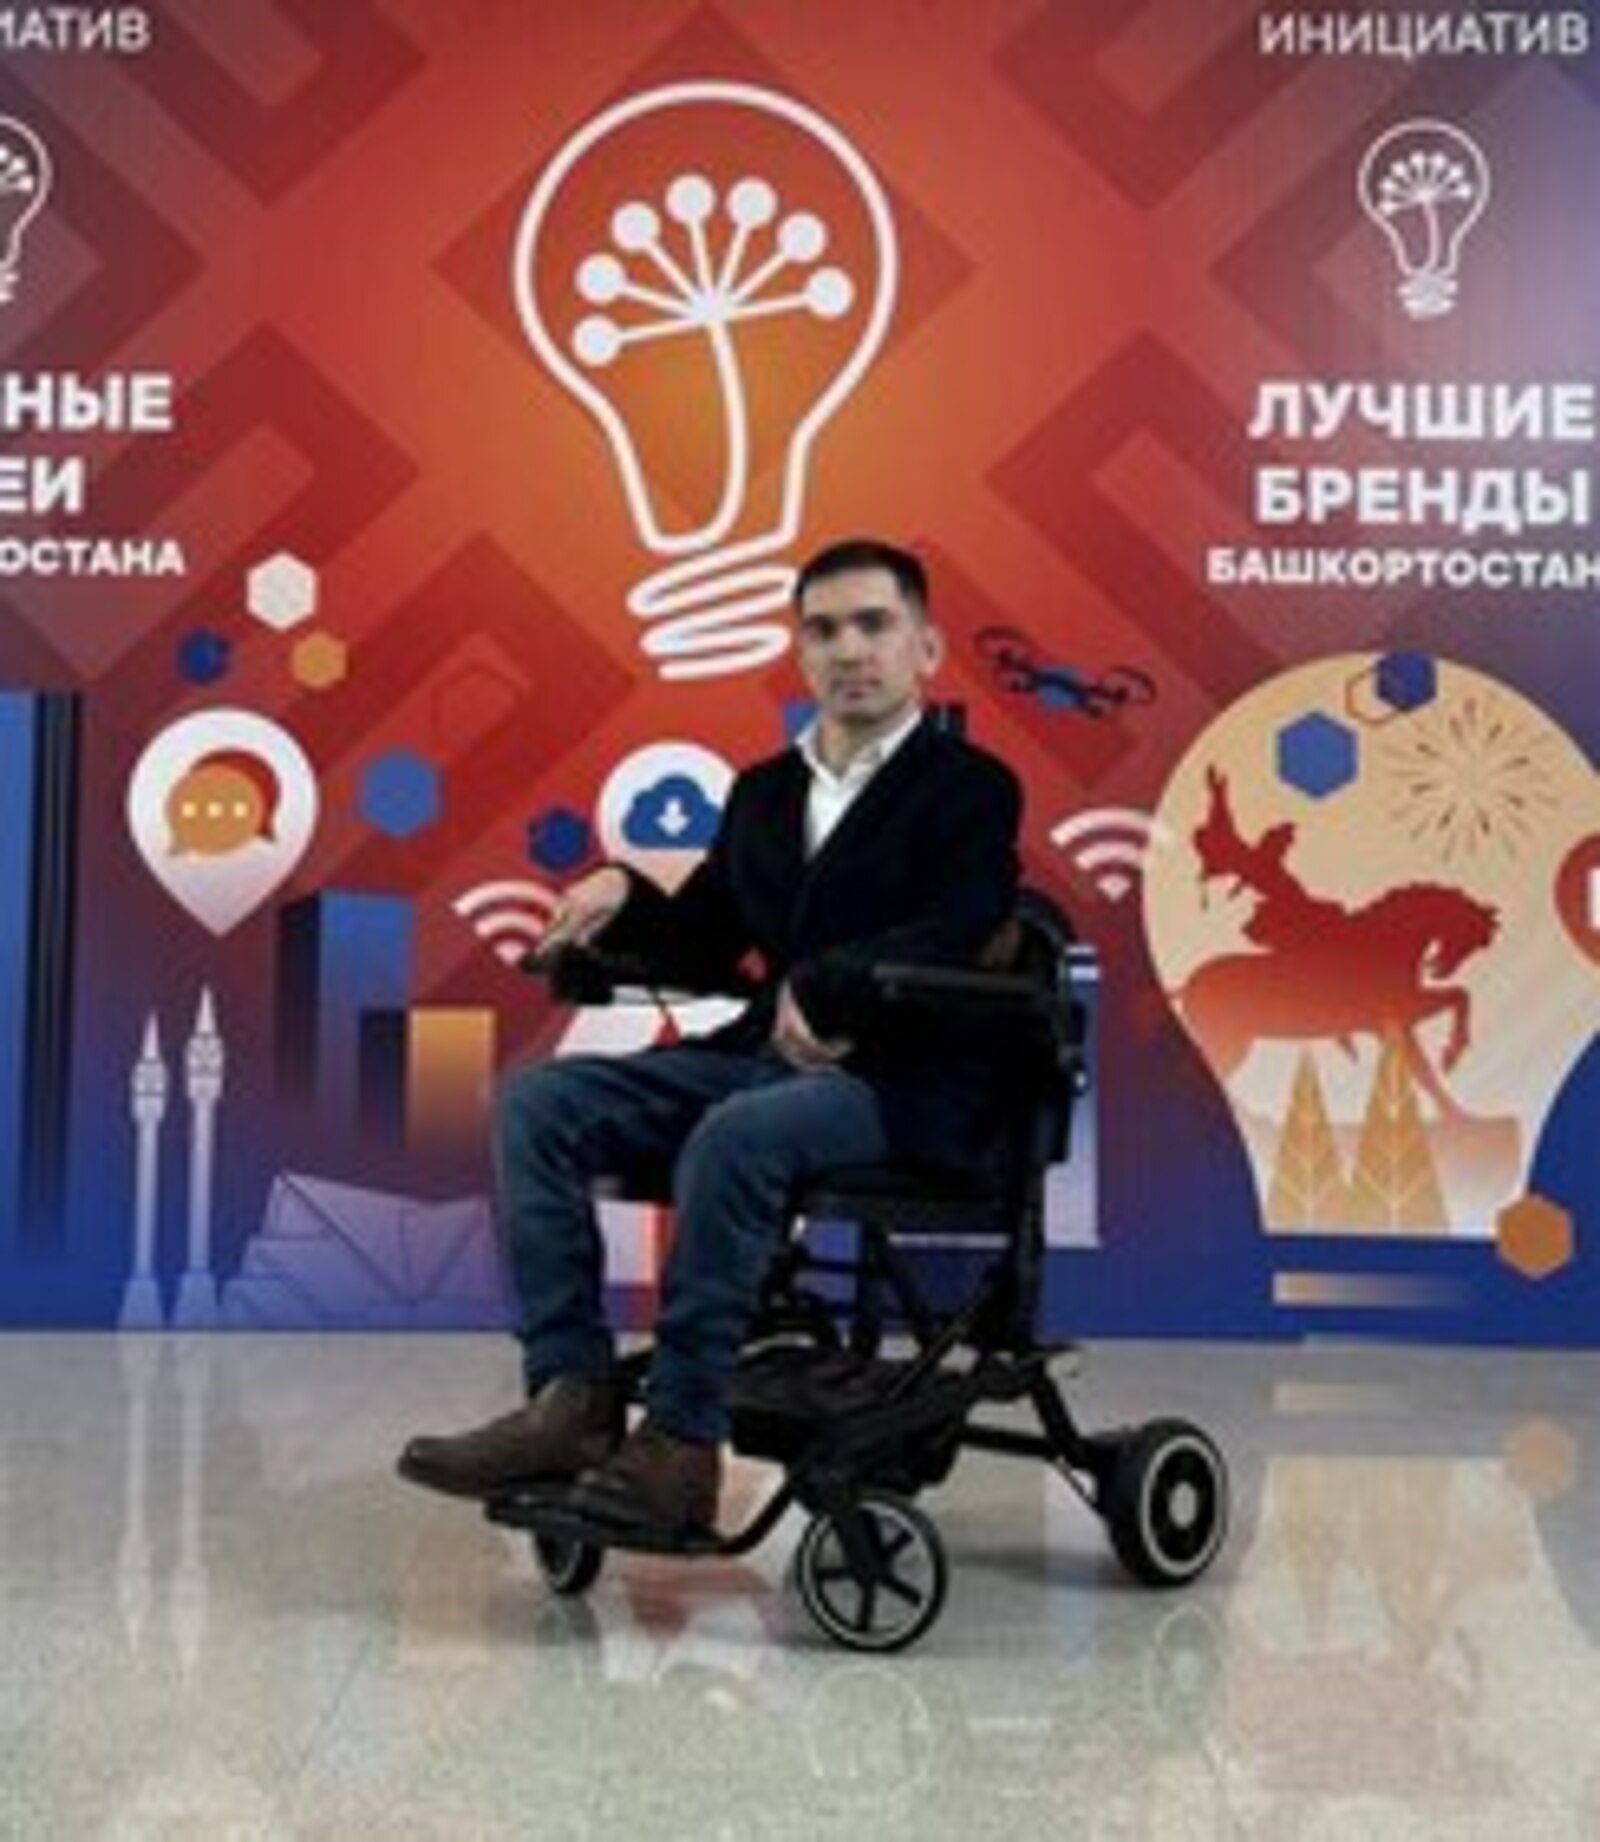 Программист из Уфы Ильгиз Фазлыев презентовал электромобиль для людей с ограниченными возможностями здоровья